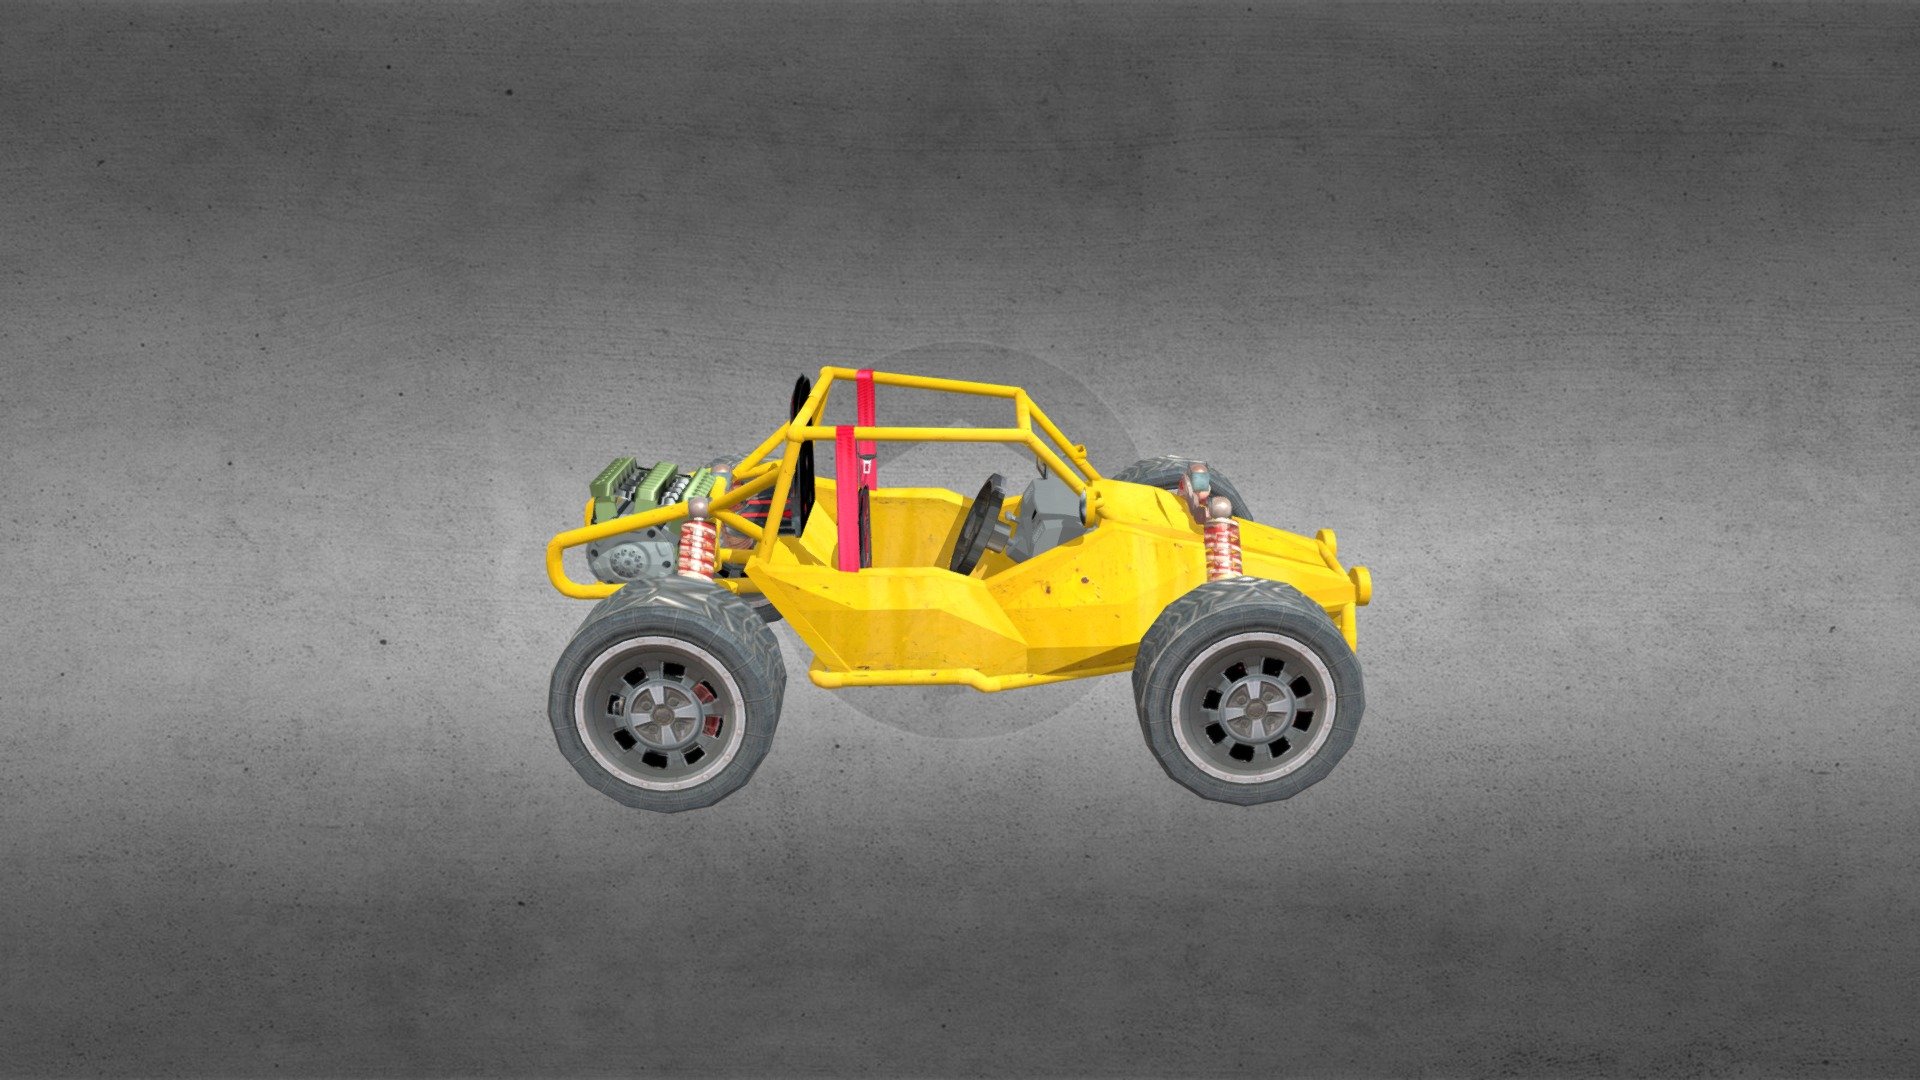 Rusty PUBG Buggy  Download Free 3D model by alenreen alenreen 1f5e3d9